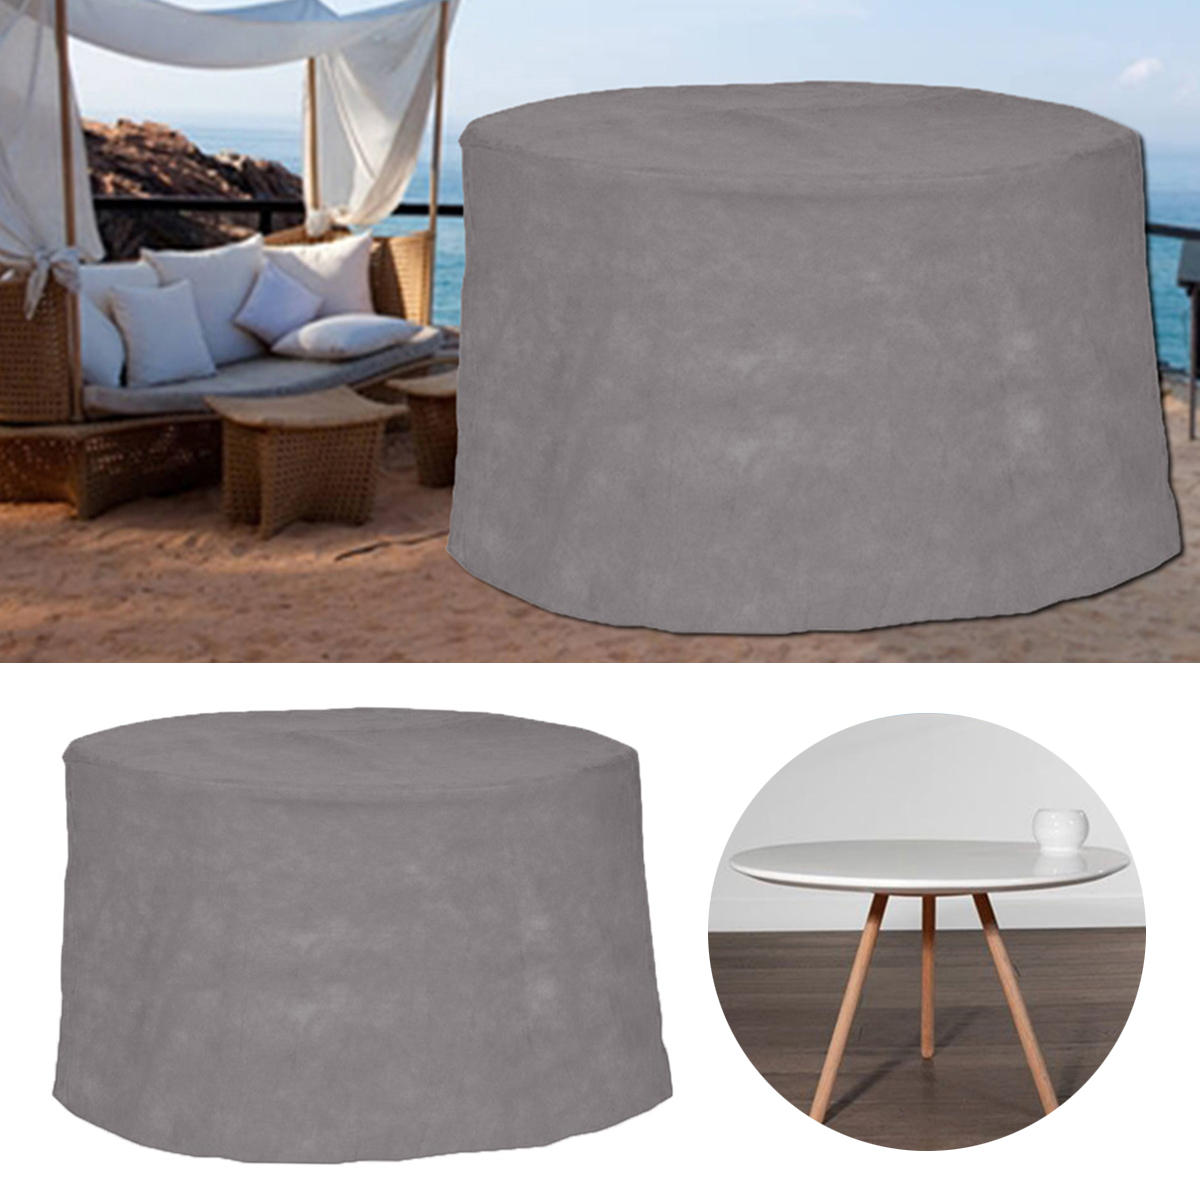 Housse imperméable pour meubles de jardin et patio de 200x94CM, conçue pour protéger contre la poussière et autres éléments environnementaux.